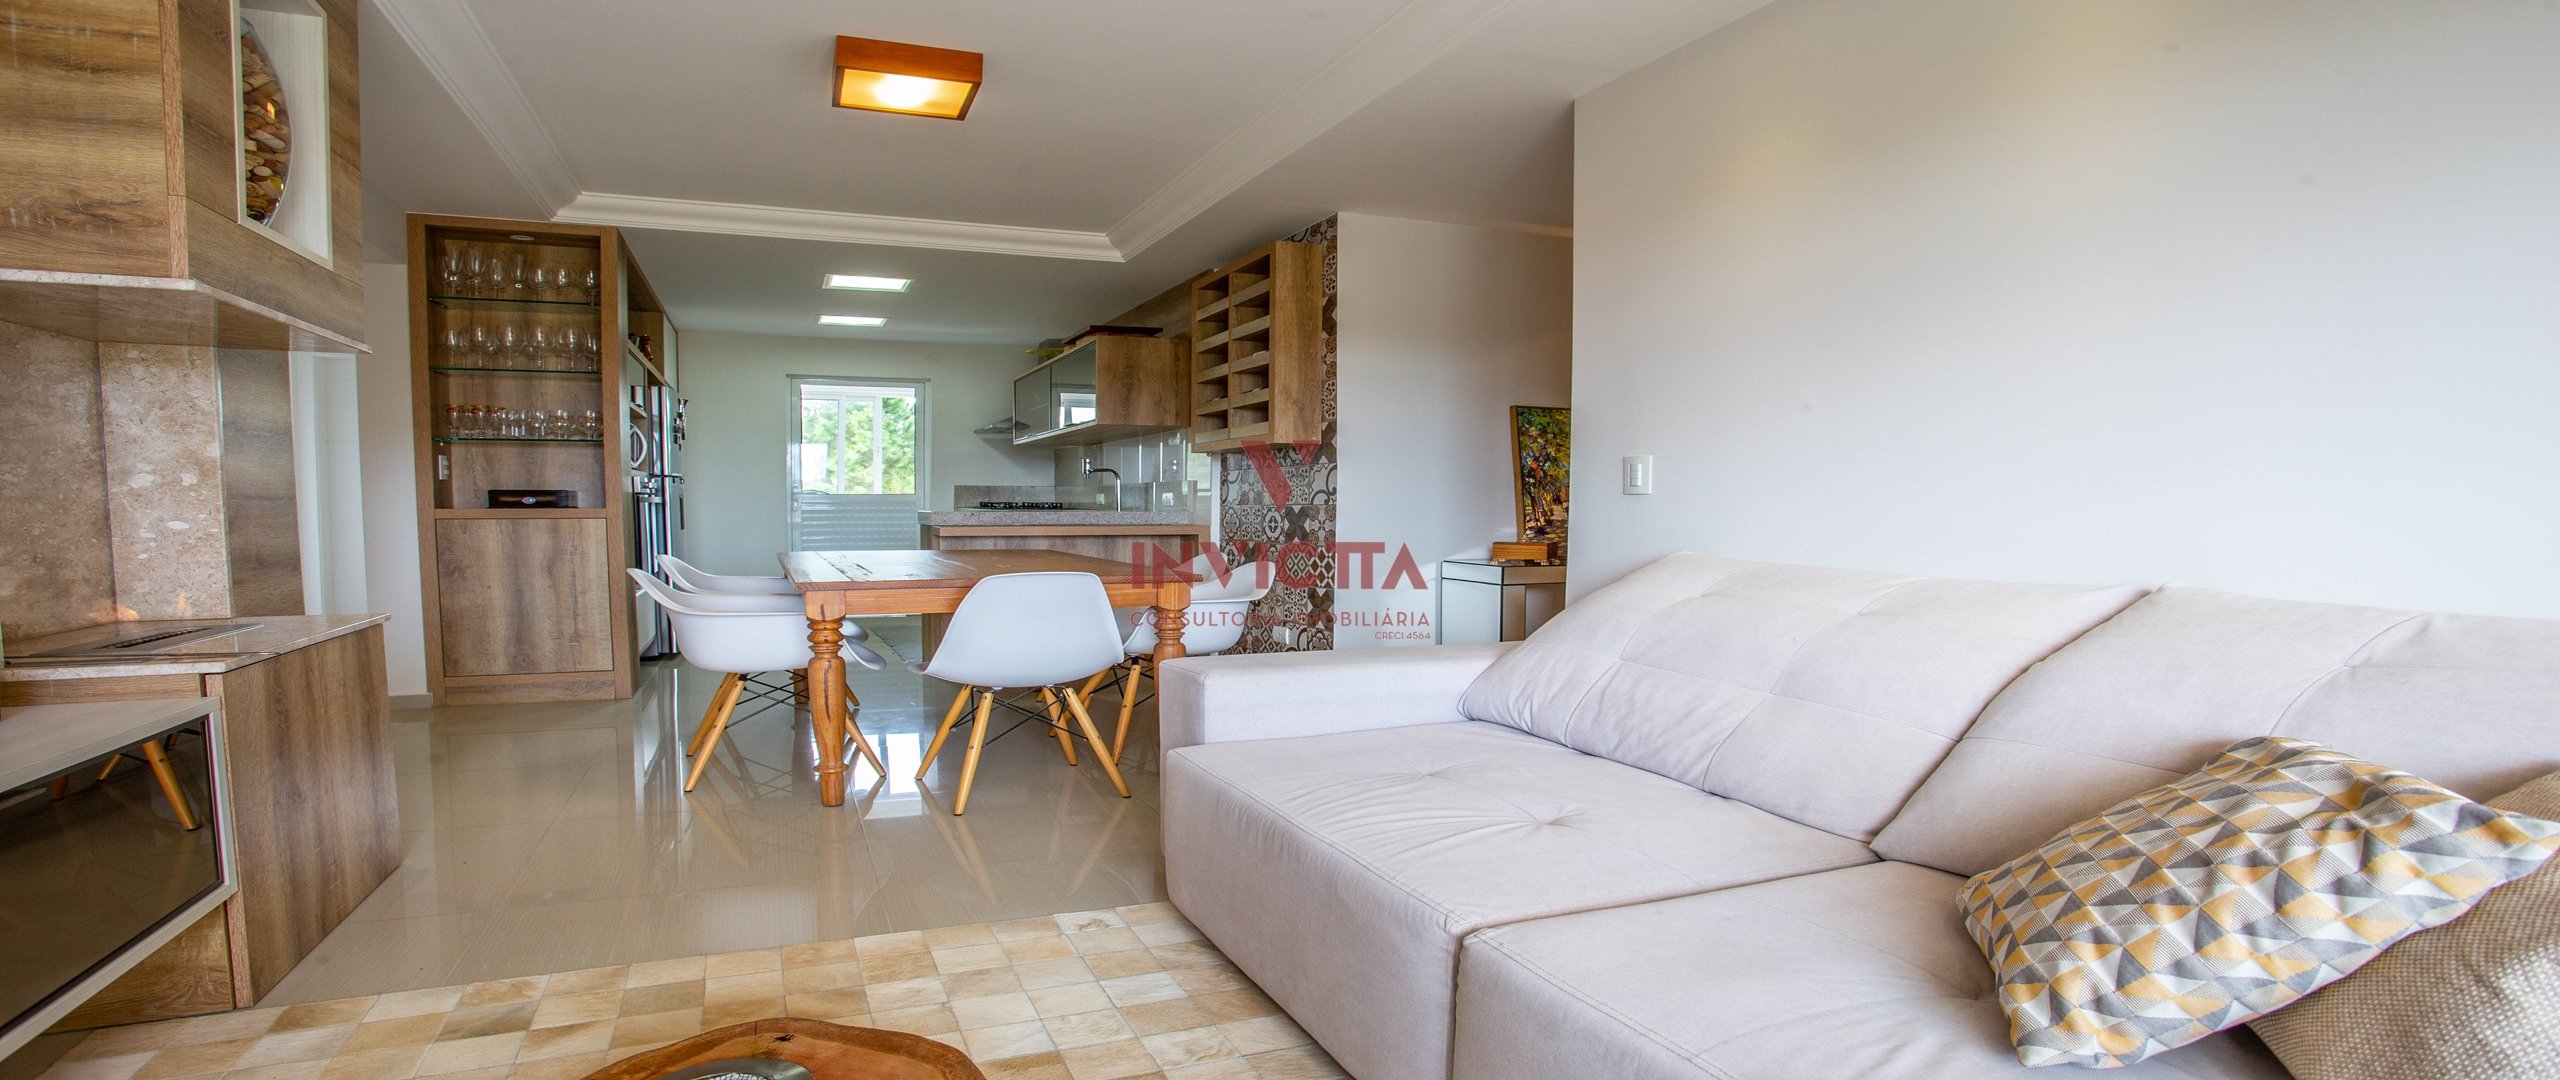 foto 3 do imóvel: apartamento a venda em Curitiba referência: AA 1307